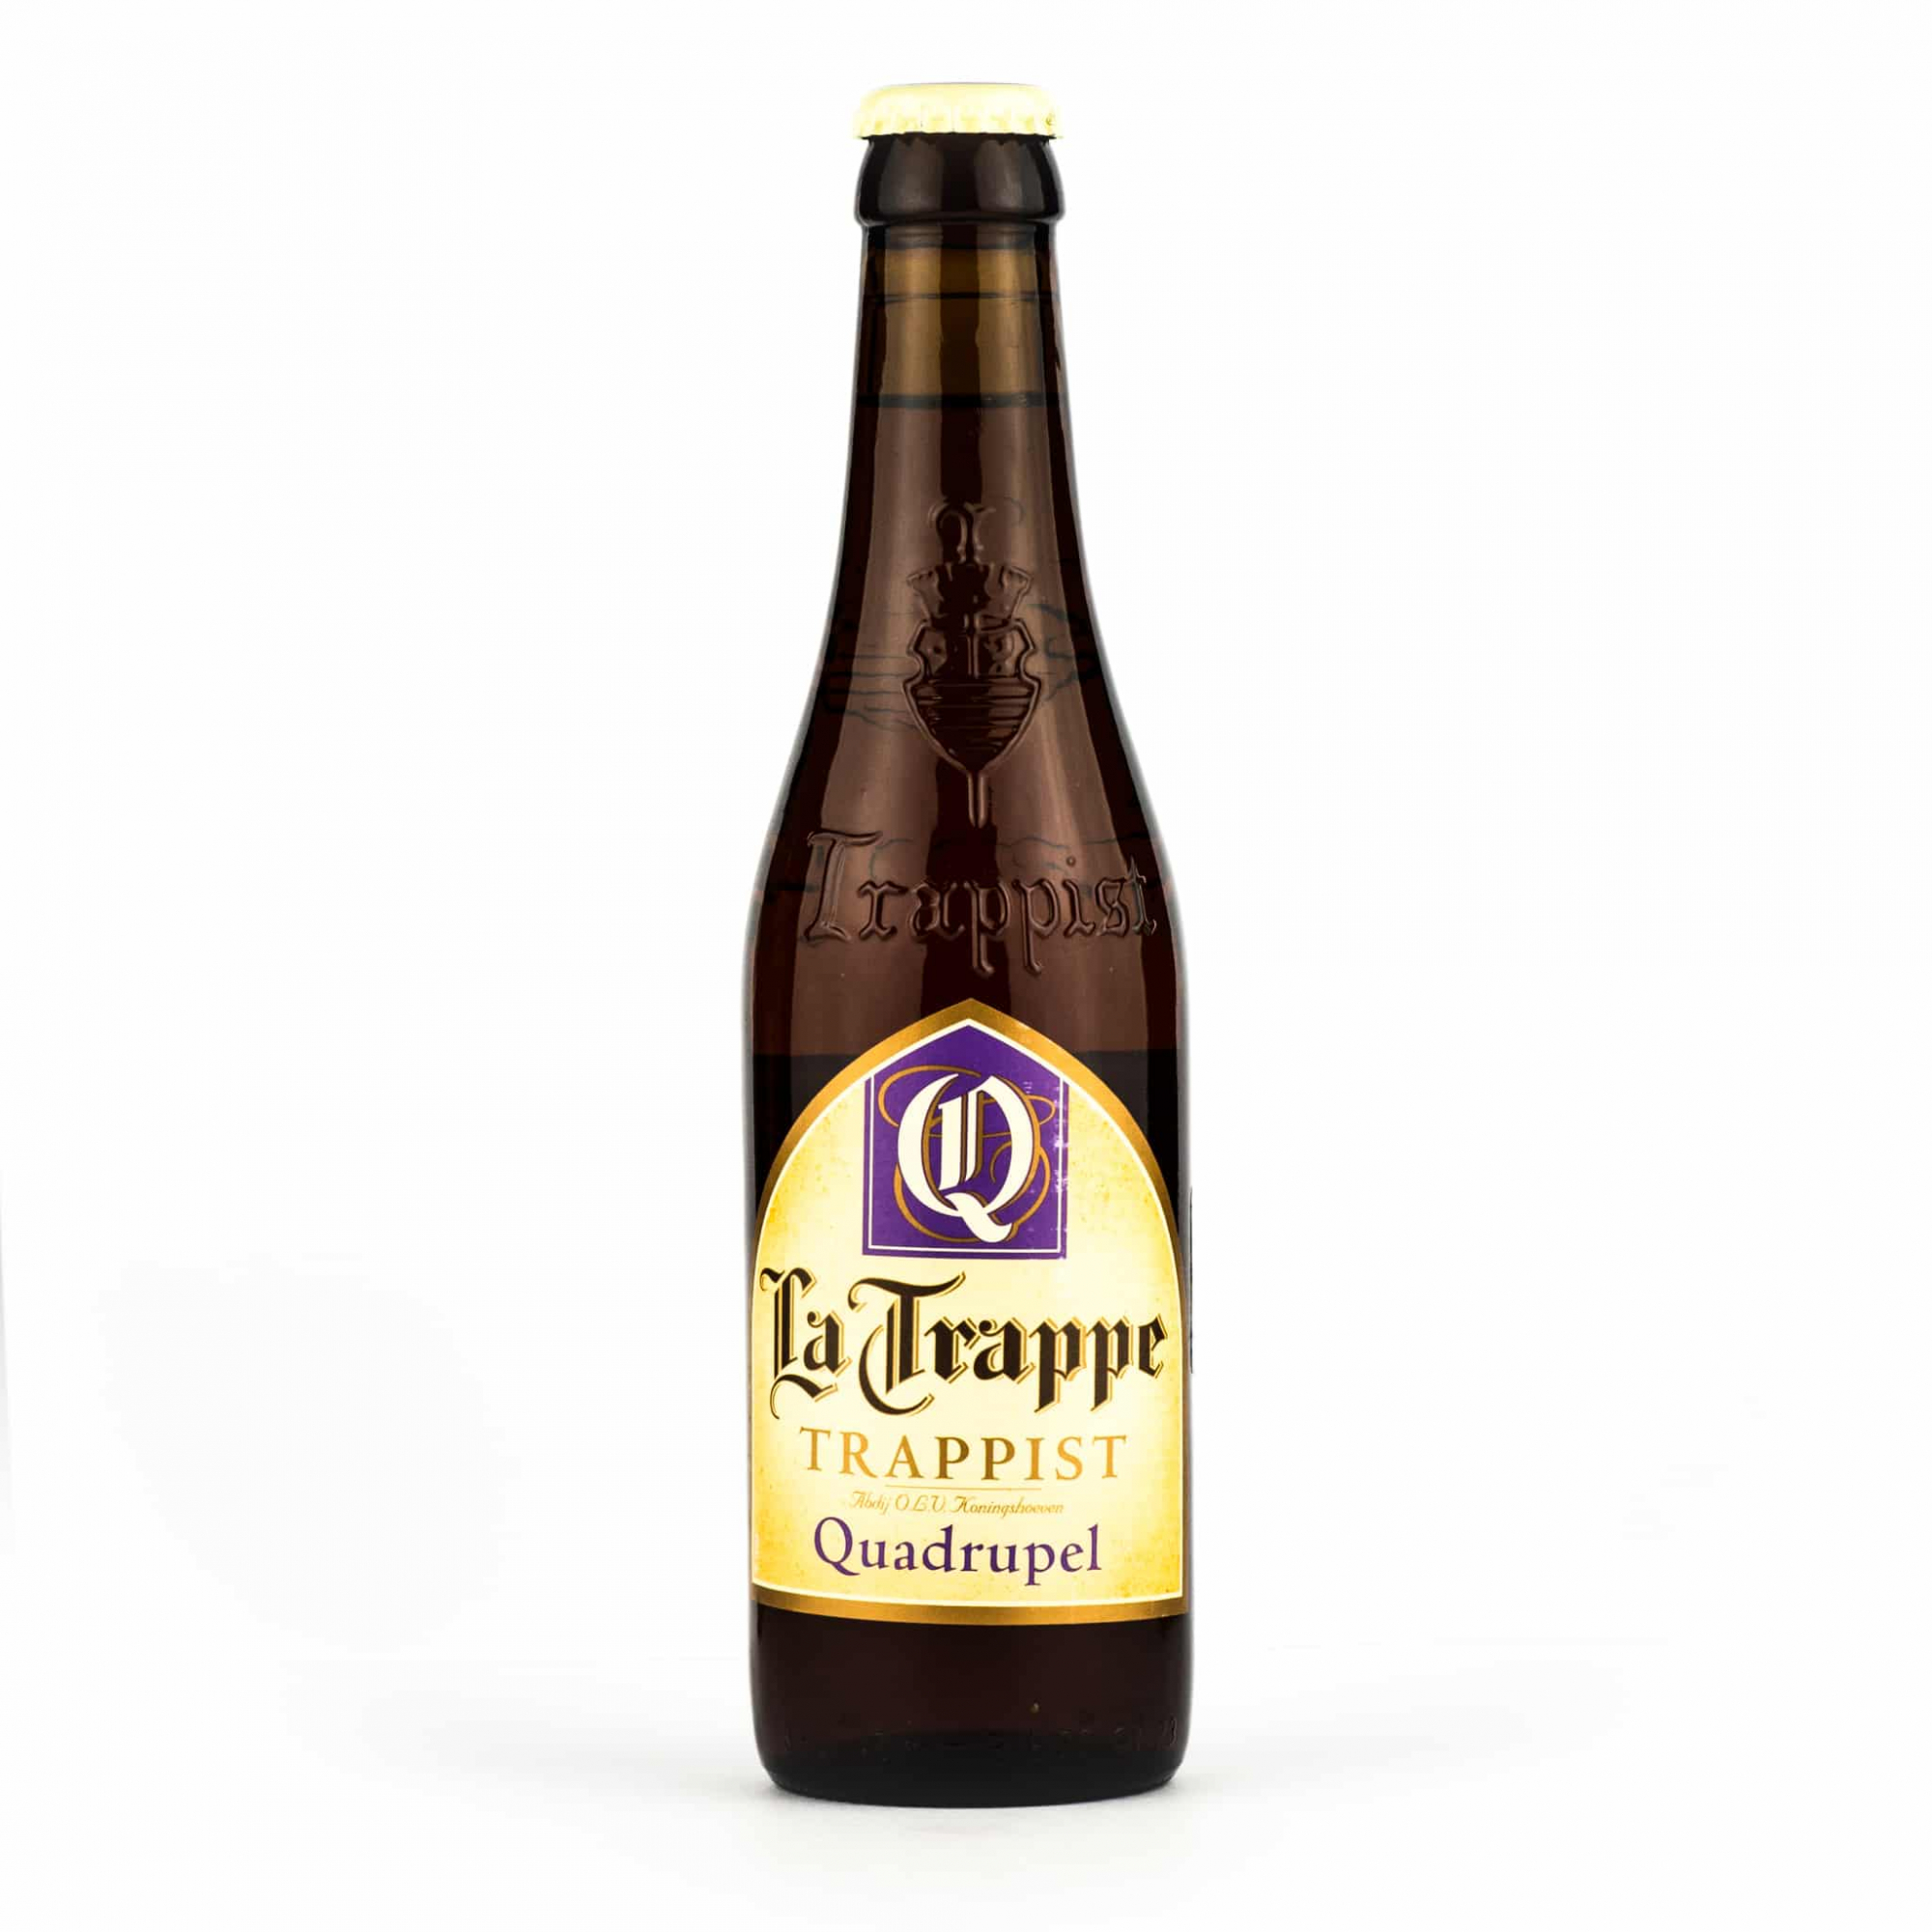 Ла трапп. Пиво la Trappe Trappist. Пиво la Trappe Quadrupel. Ла Трапп "квадрюпель" тёмное, 0,33 л. ла Трапп "квадрюпель" тёмное, 0,33 л.. Ла Траппе пиво квадрюпель 0,33.